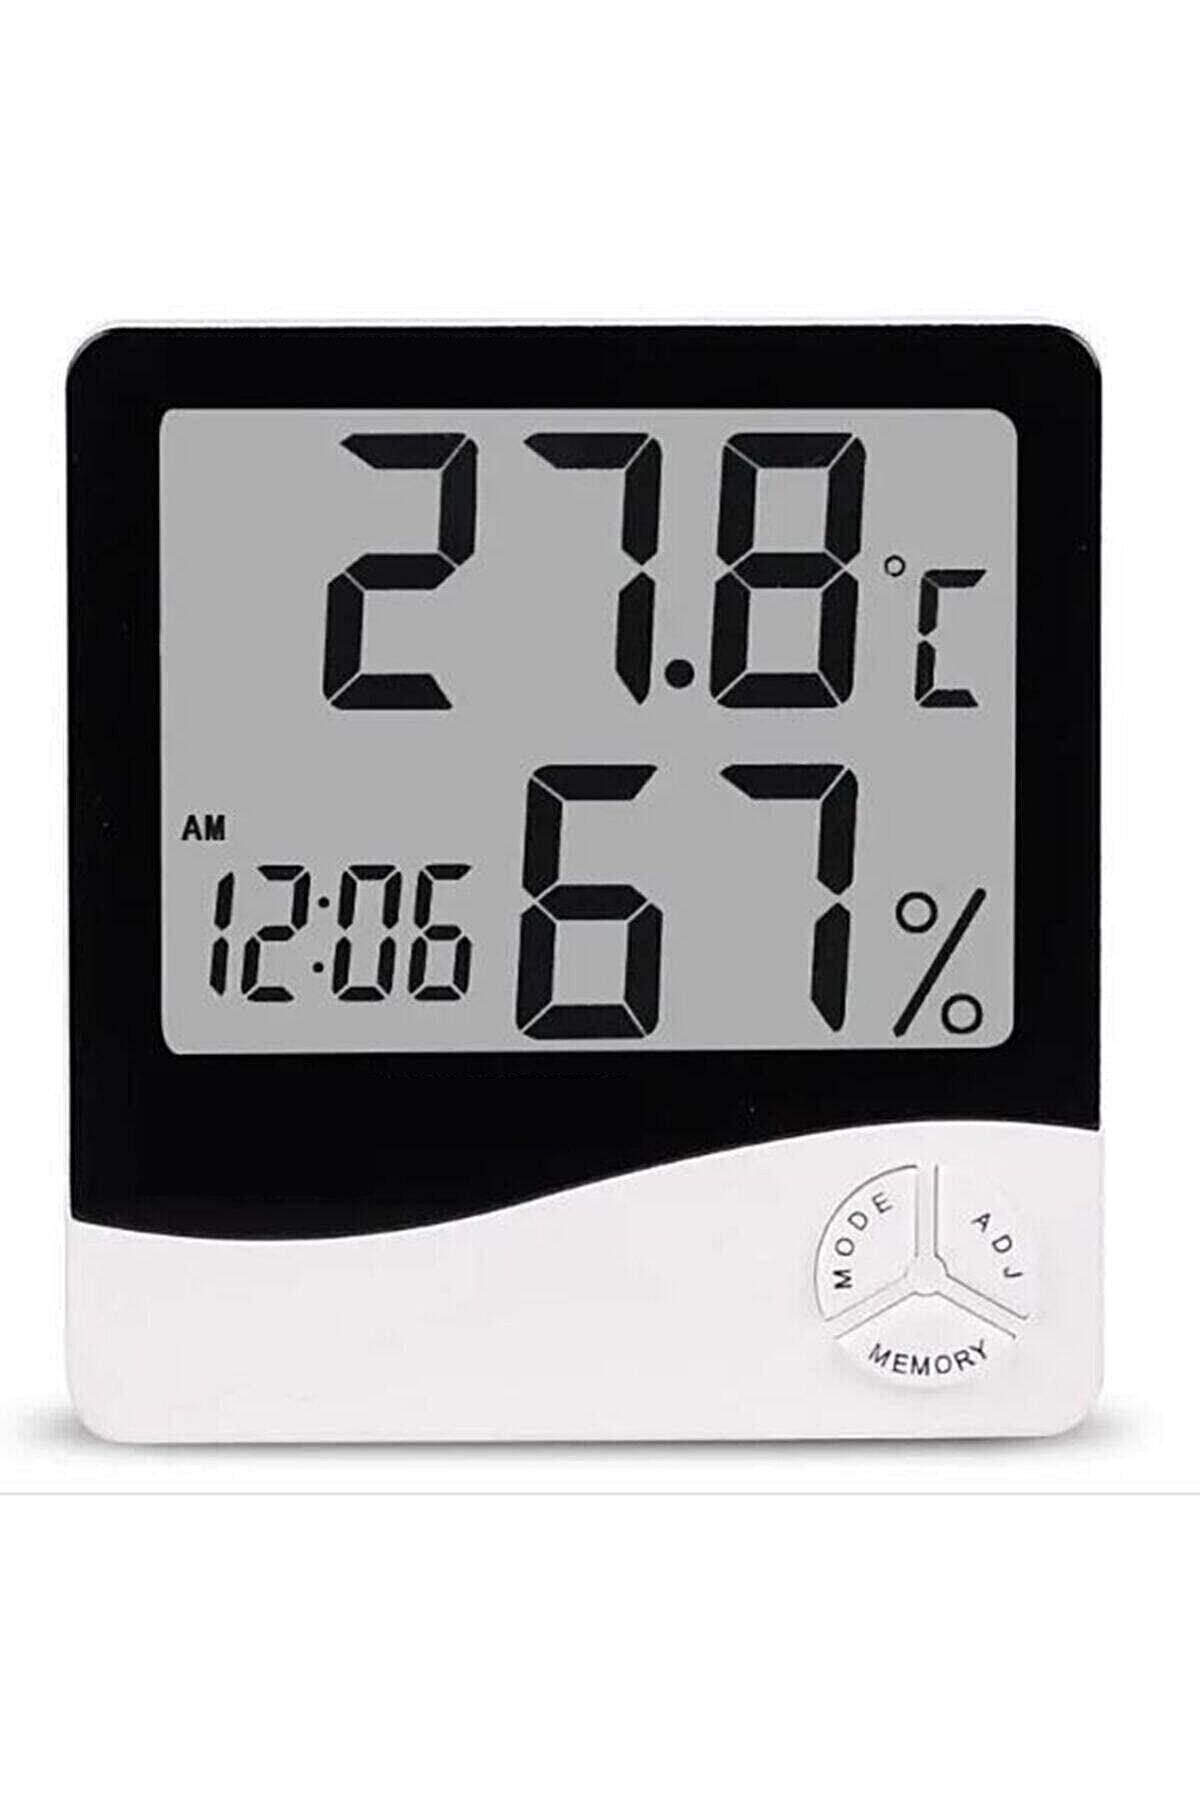 İBOVİA Dijital oda Termometresi Sıcaklık Ve Nem Ölçer Masa Saati Alarm